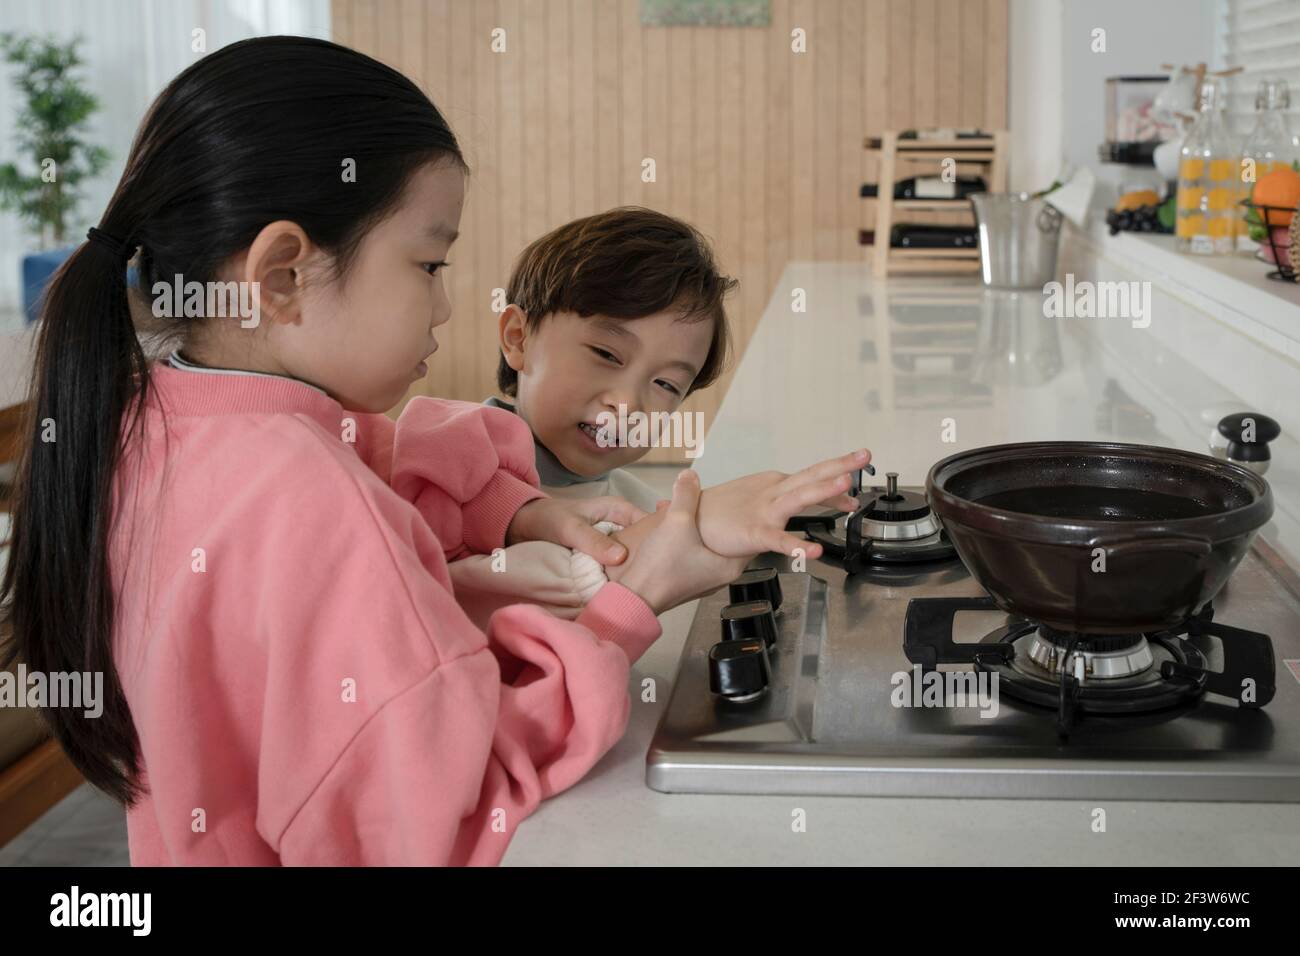 Kindesmissbrauch Konzept, asiatische Kinder versuchen zu kochen Stockfoto